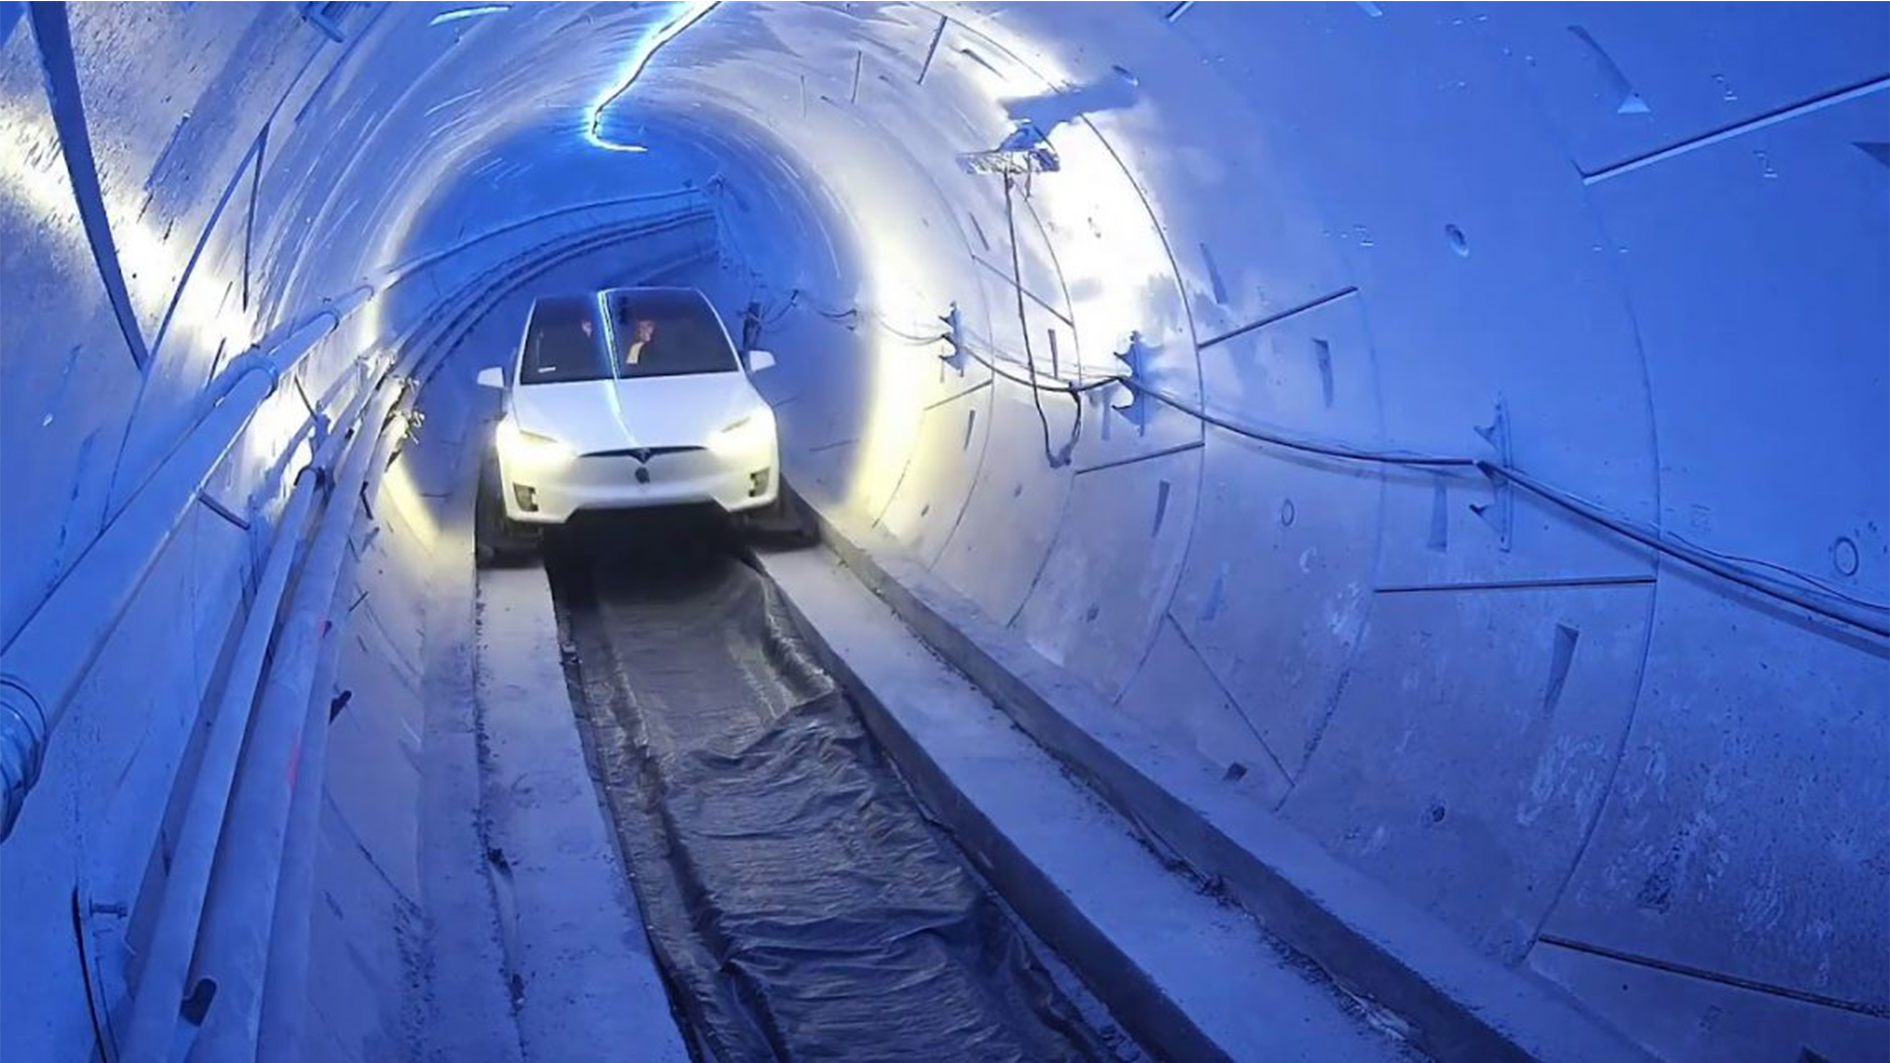 Empresa de Elon Musk propõe novo túnel para transporte em carros Tesla | Negócios